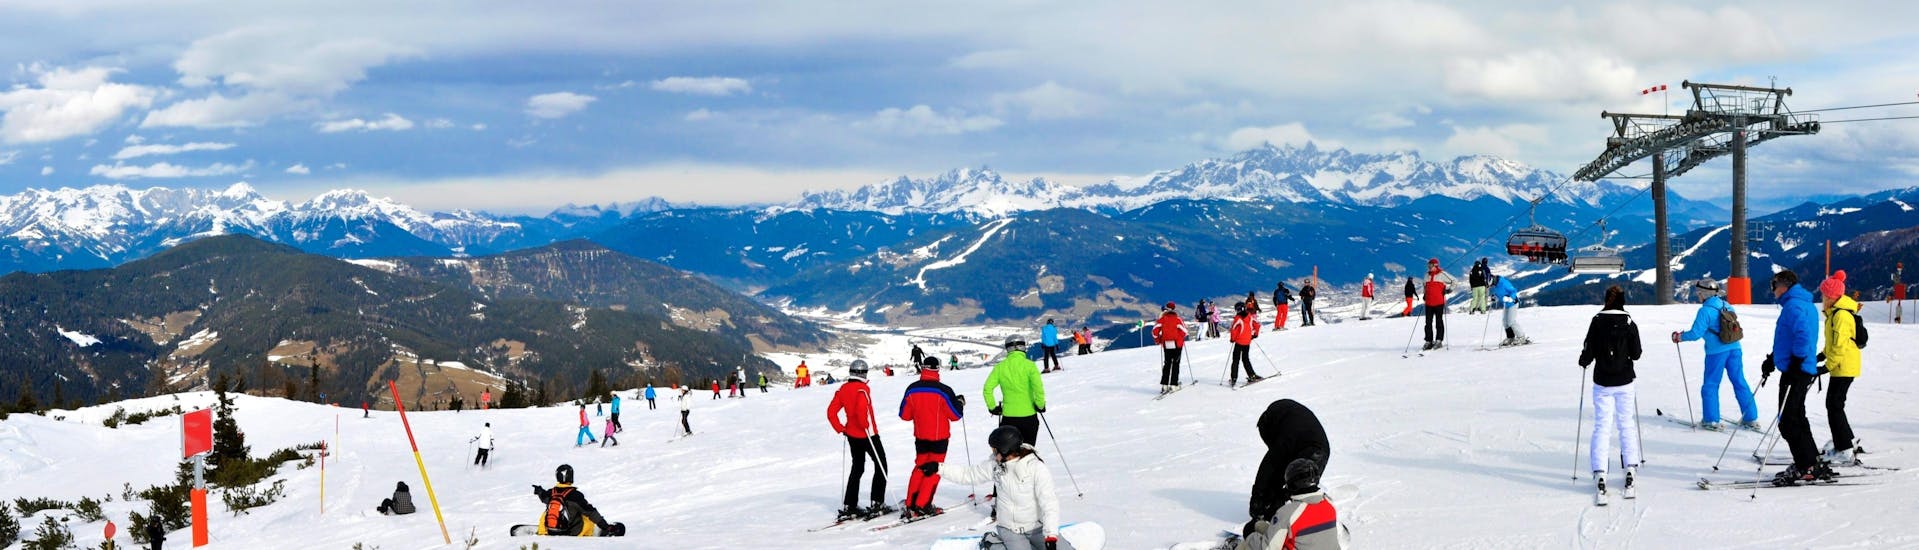 Ausblick auf die sonnige Berglandschaft beim Skifahren lernen mit den Skischulen auf der Reiteralm.